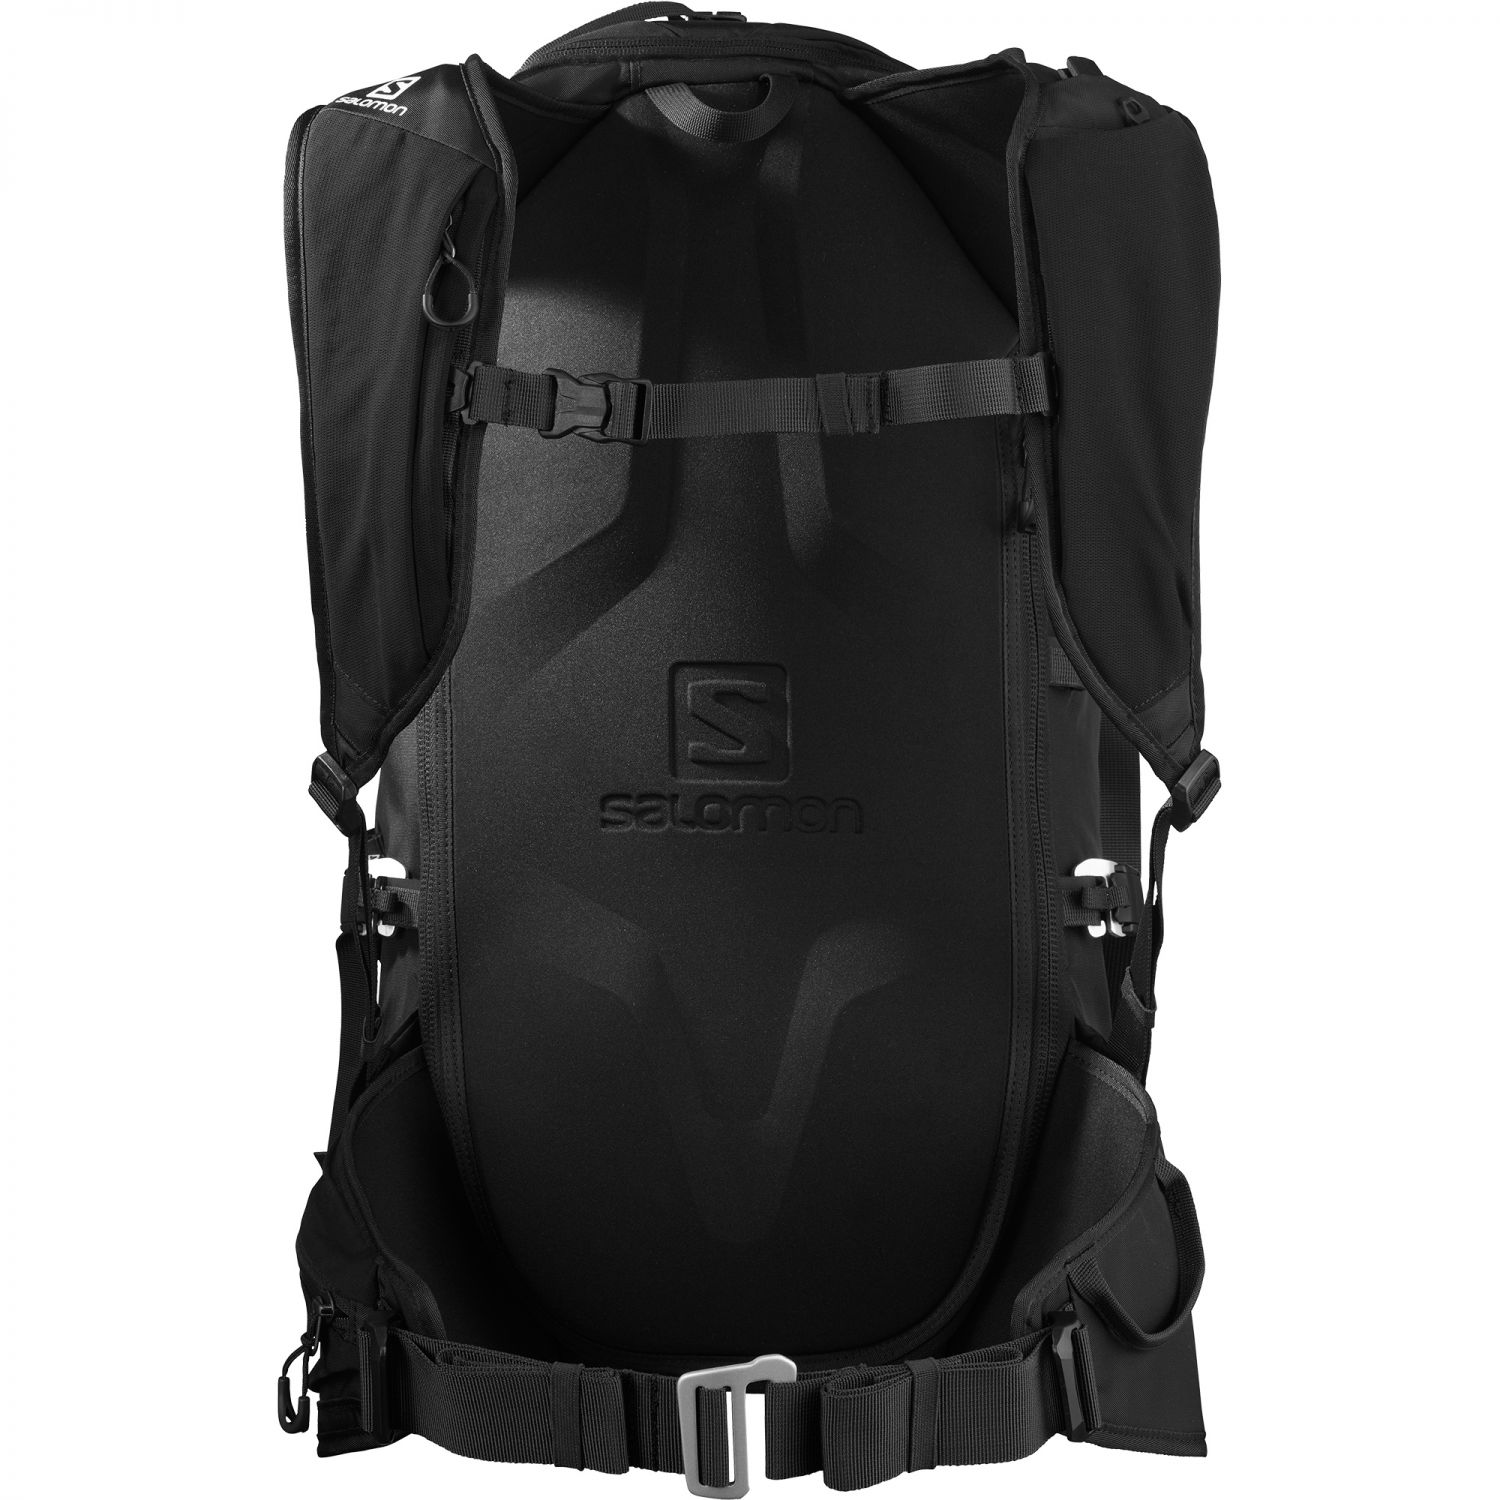 Salomon MTN 45, backpack, black/white